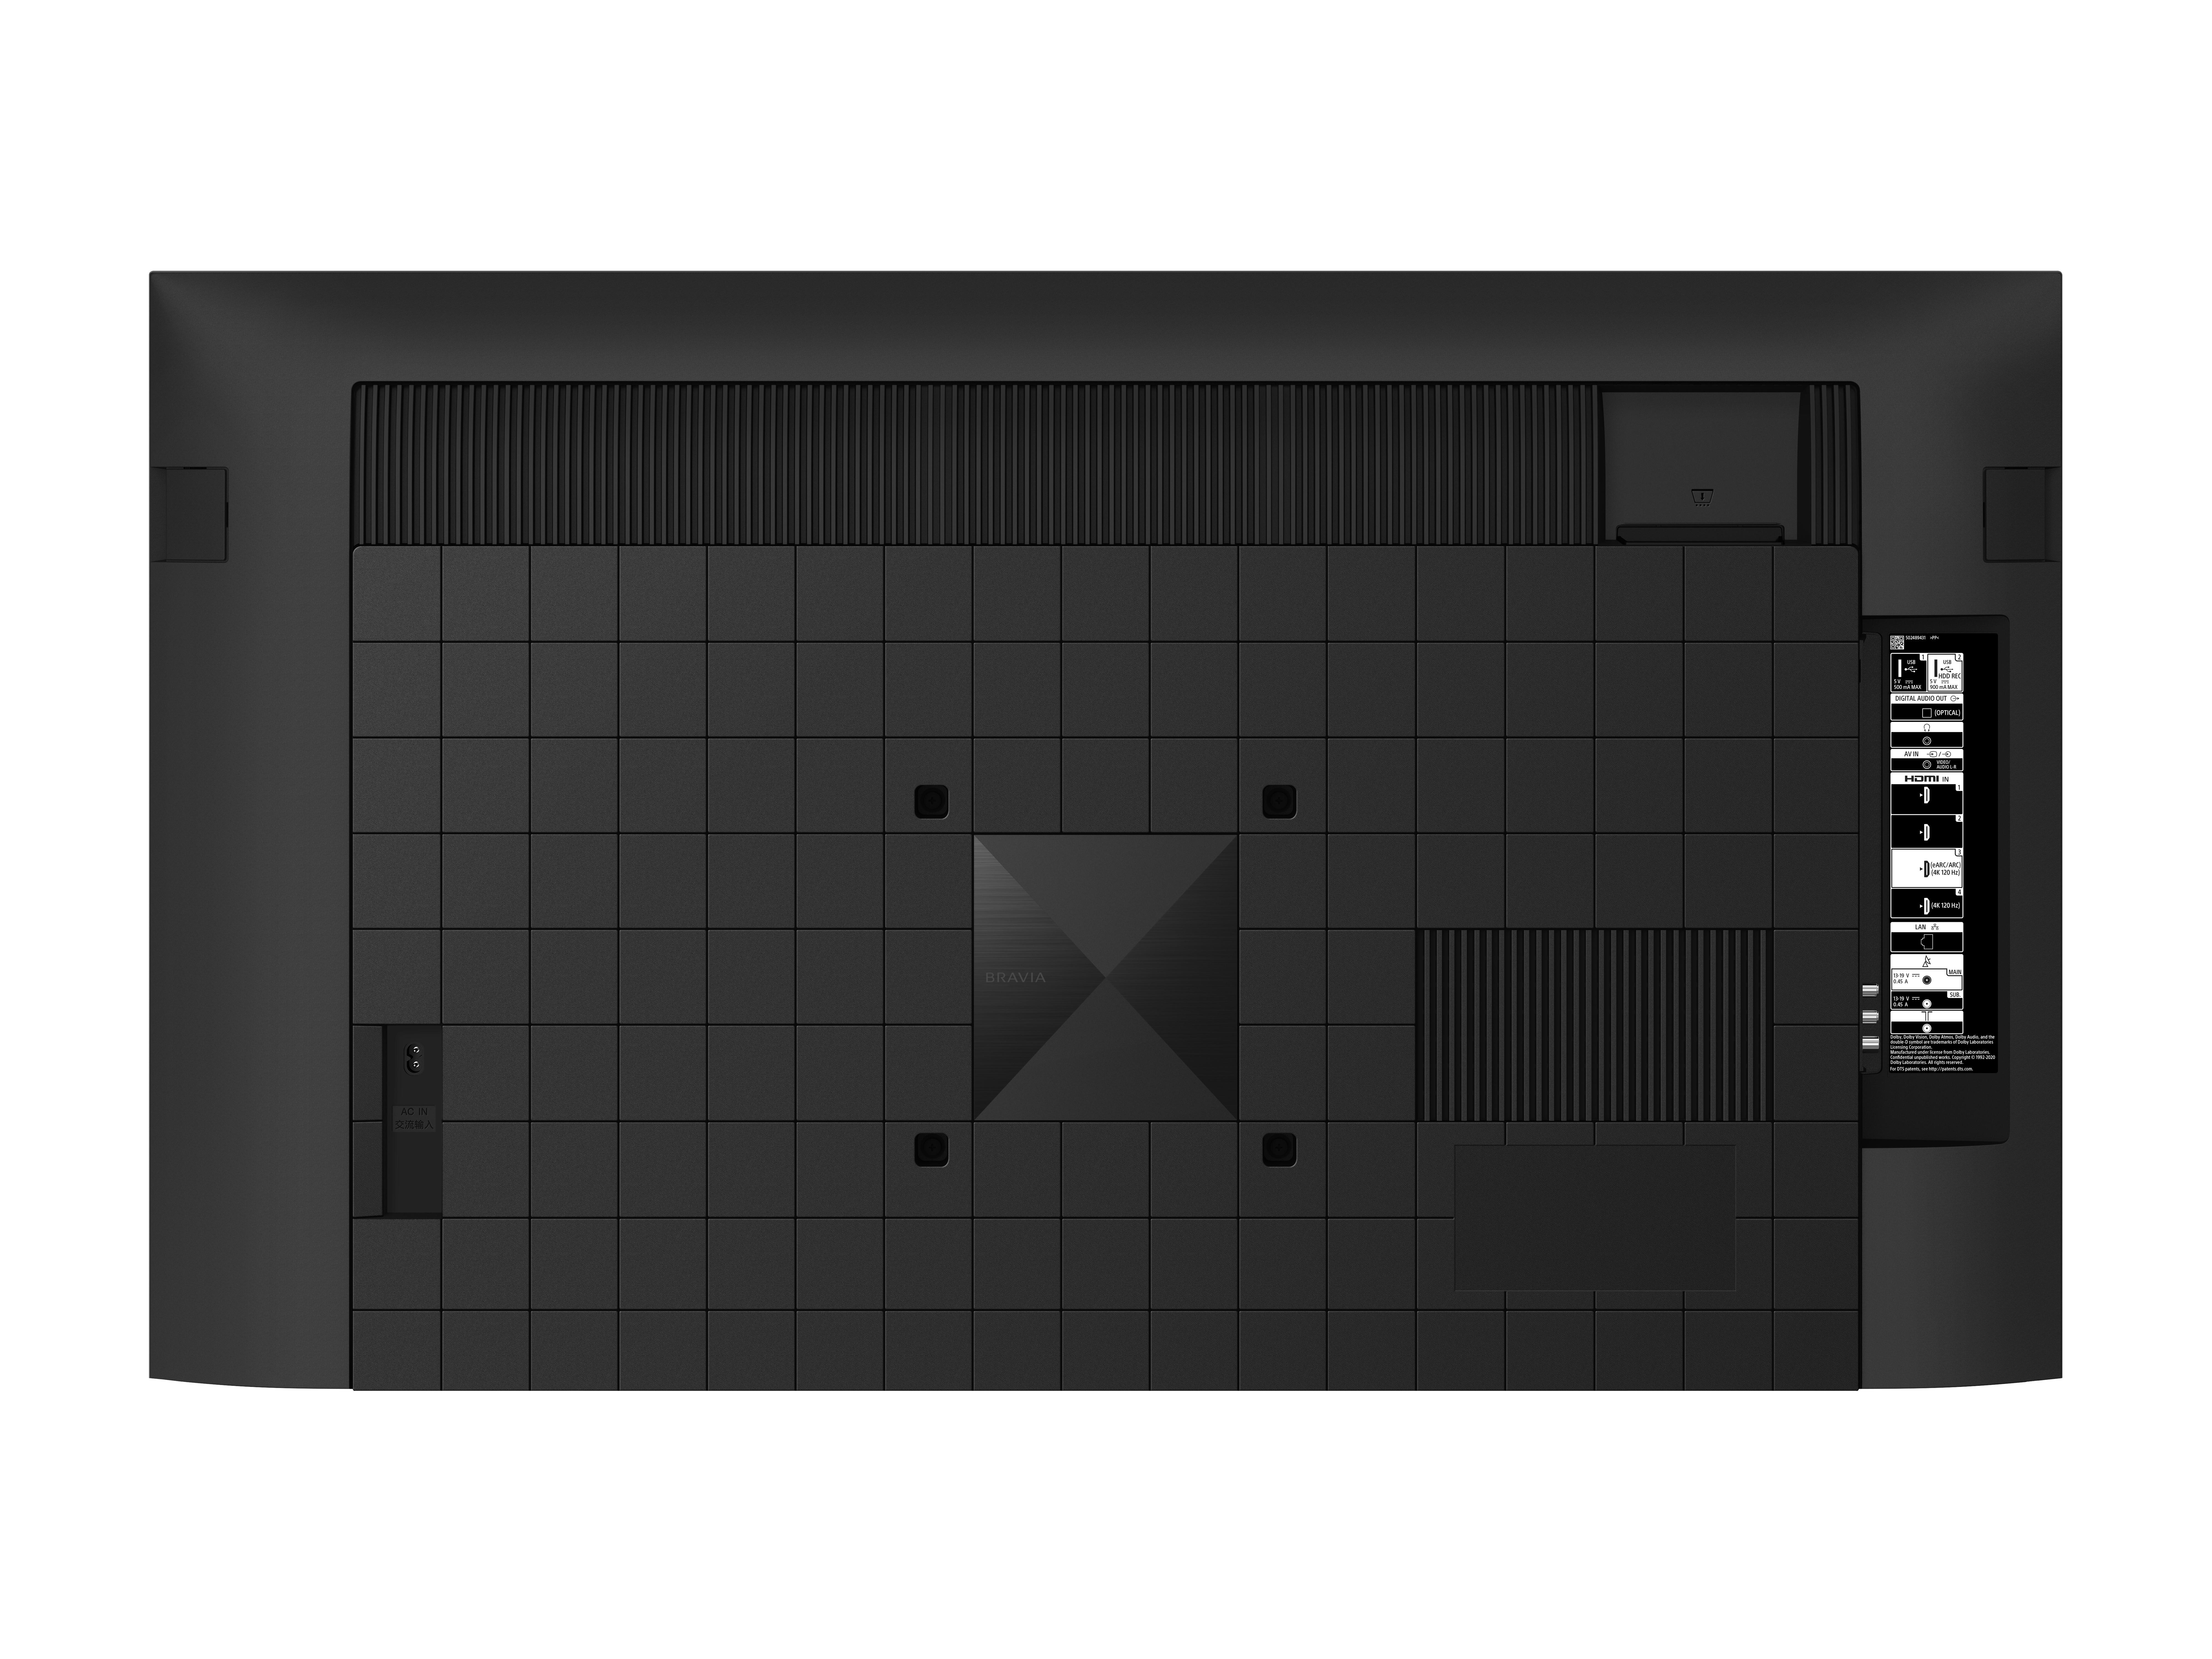 SONY XR-50X90J LED Zoll (Flat, UHD / 4K, 126 cm, TV, SMART 50 TV Google TV)